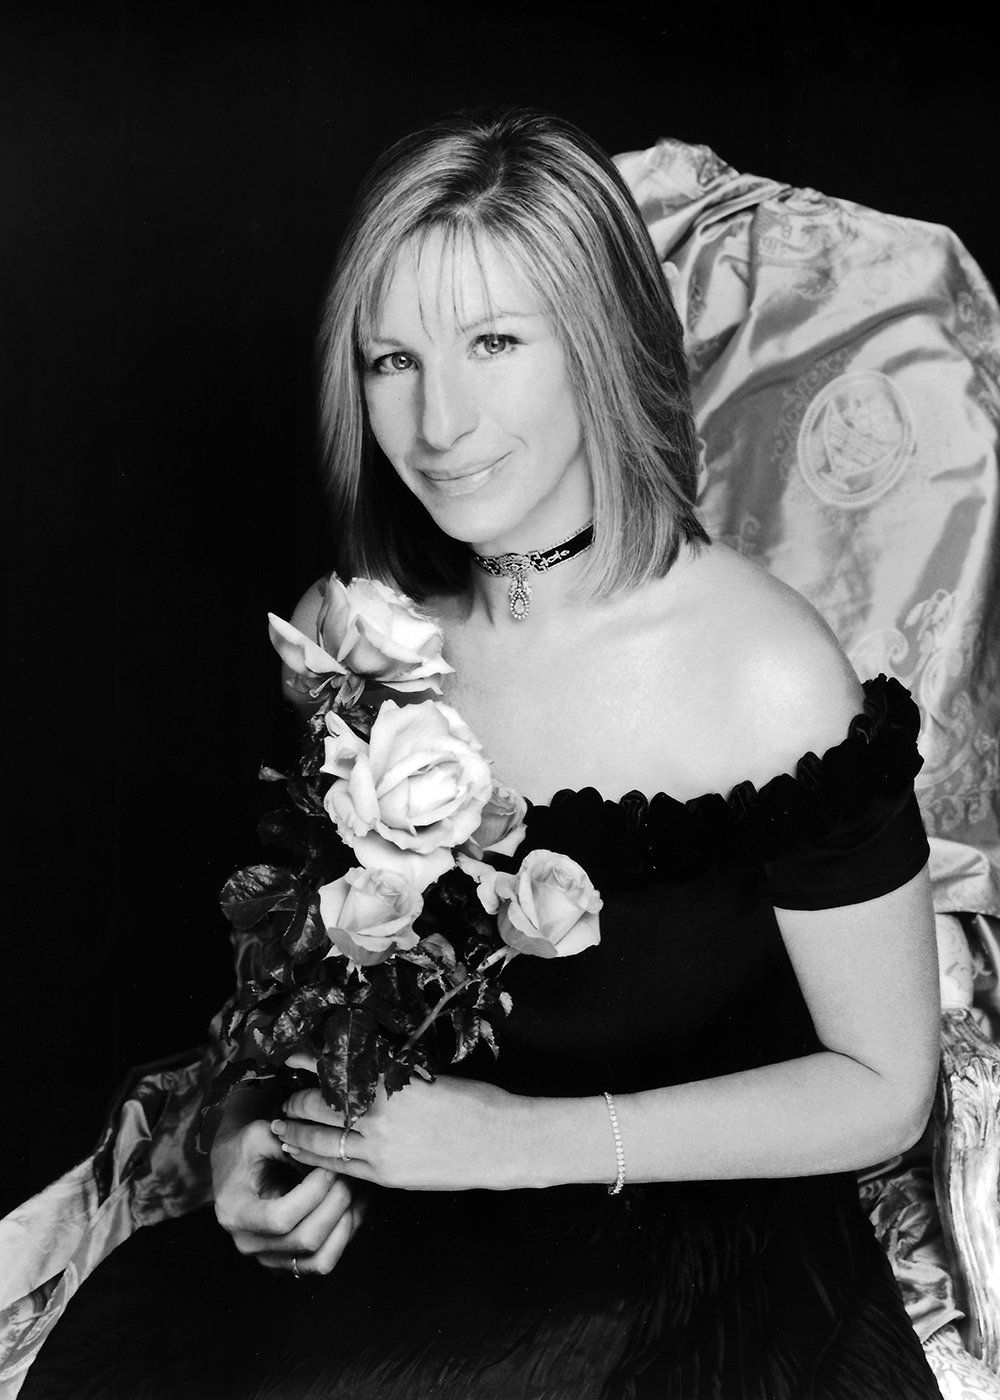 Publicity photo of Barbra Streisand by Firooz Zahedi.